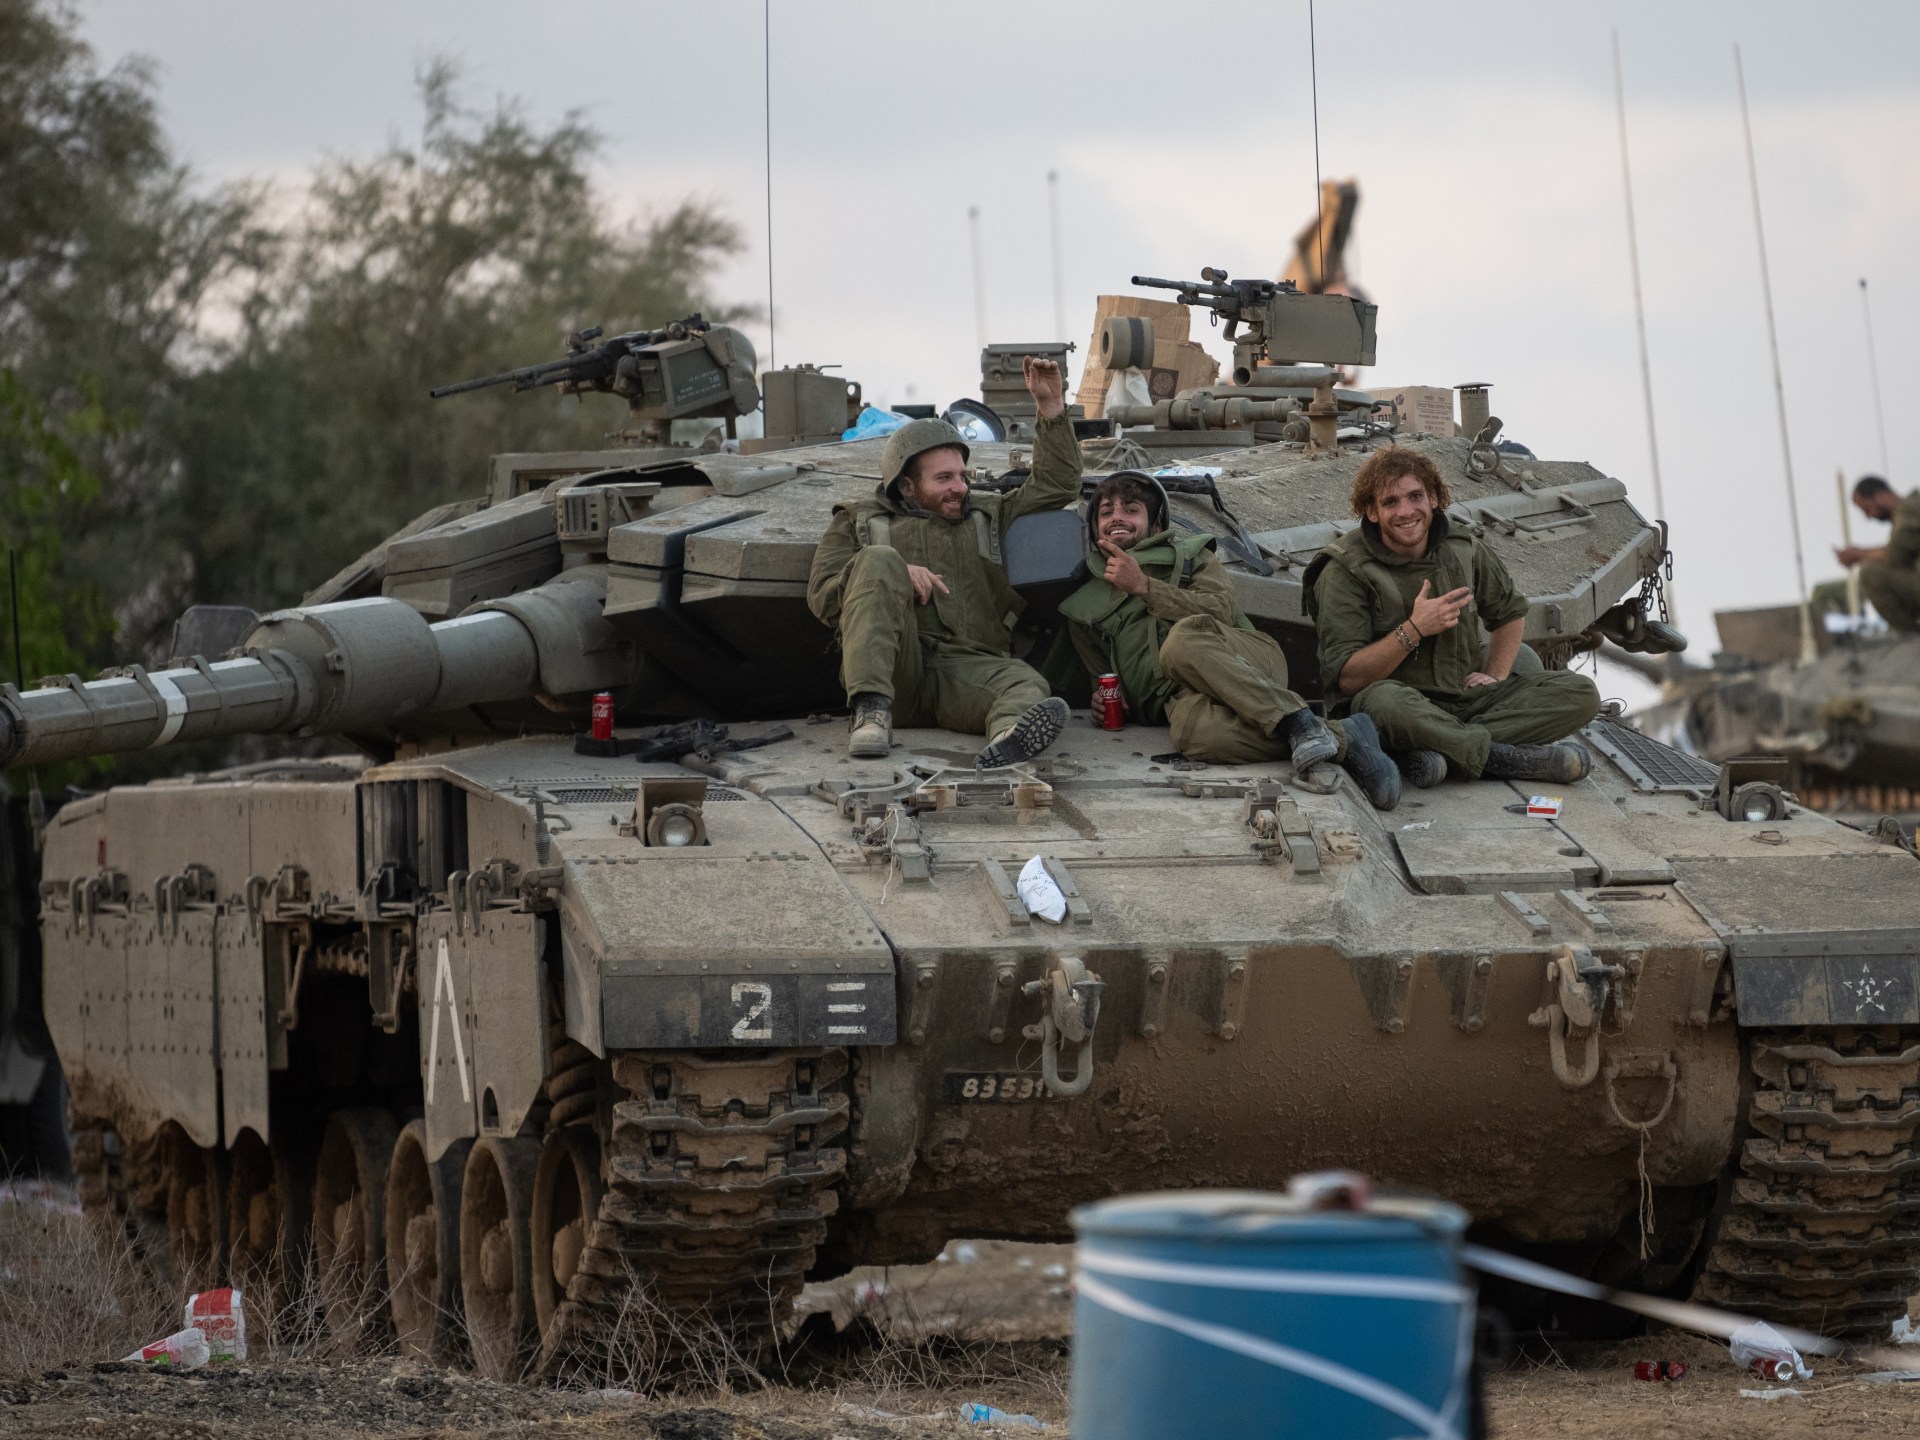 عائلات إسرائيليين قتلوا بقذيفة دبابة للجيش بغلاف غزة يطالبون بالتحقيق | أخبار – البوكس نيوز